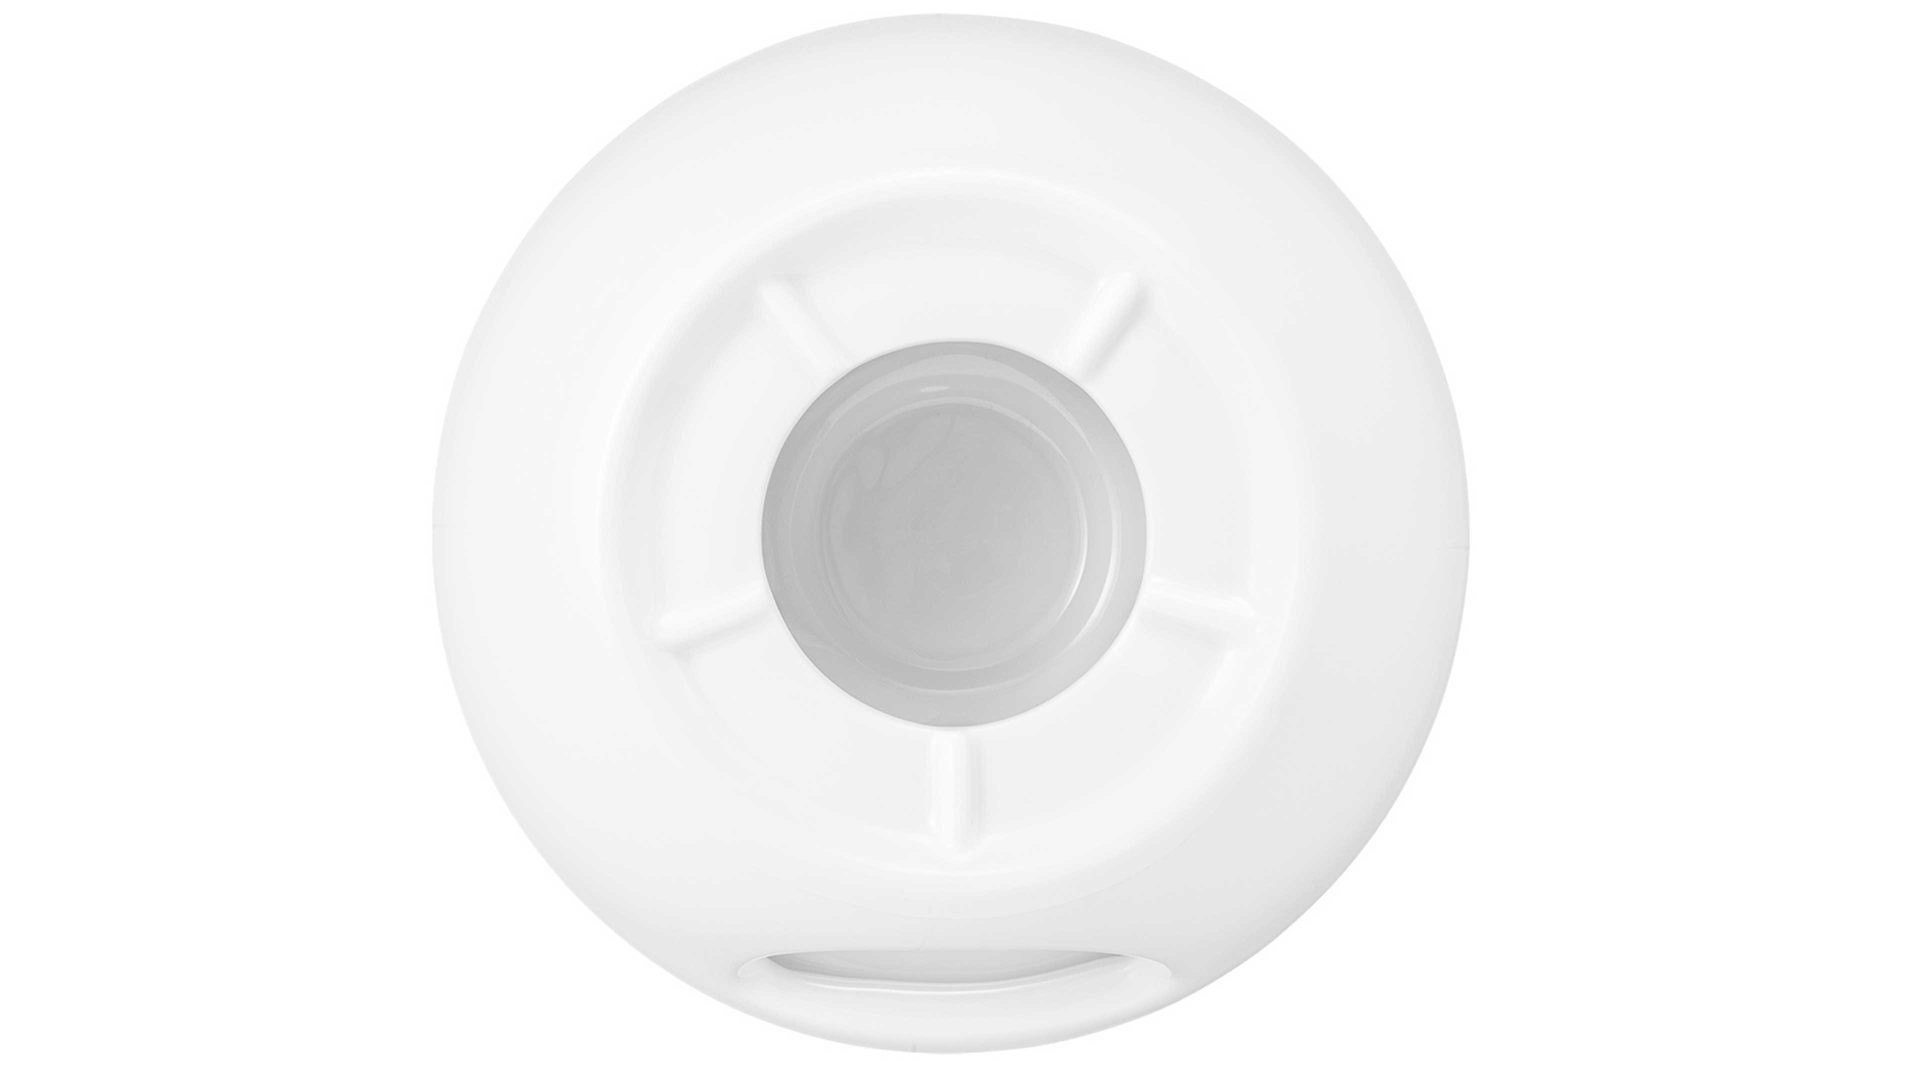 Stövchen Seltmann aus Porzellan in Weiß Seltmann Geschirrserie Beat 3 – Stövchen weißes Porzellan – Durchmesser ca. 16 cm